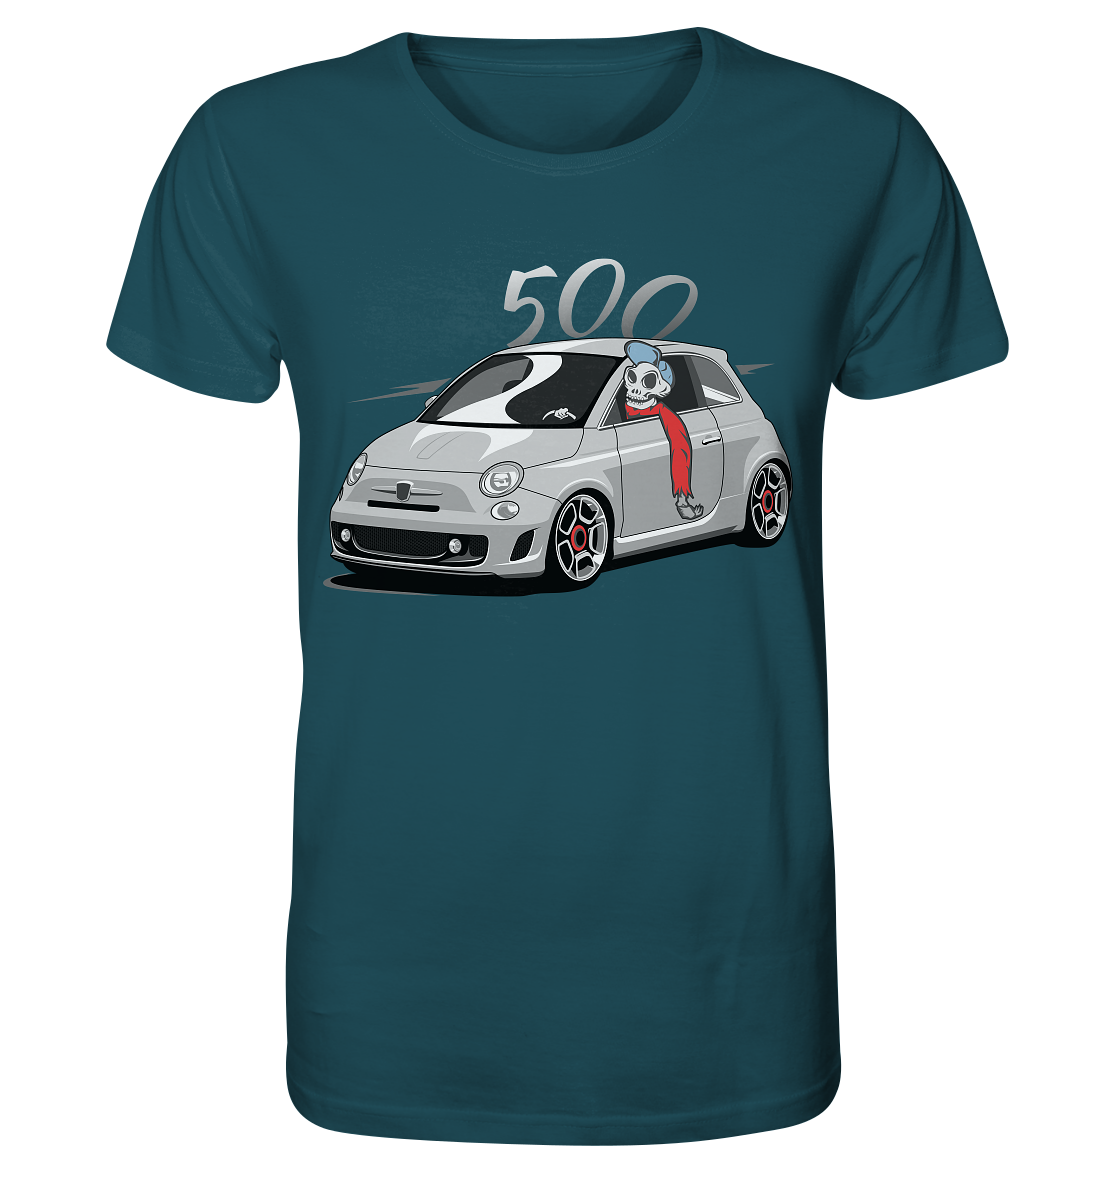 COD_FGK500SKULL - Organic Shirt